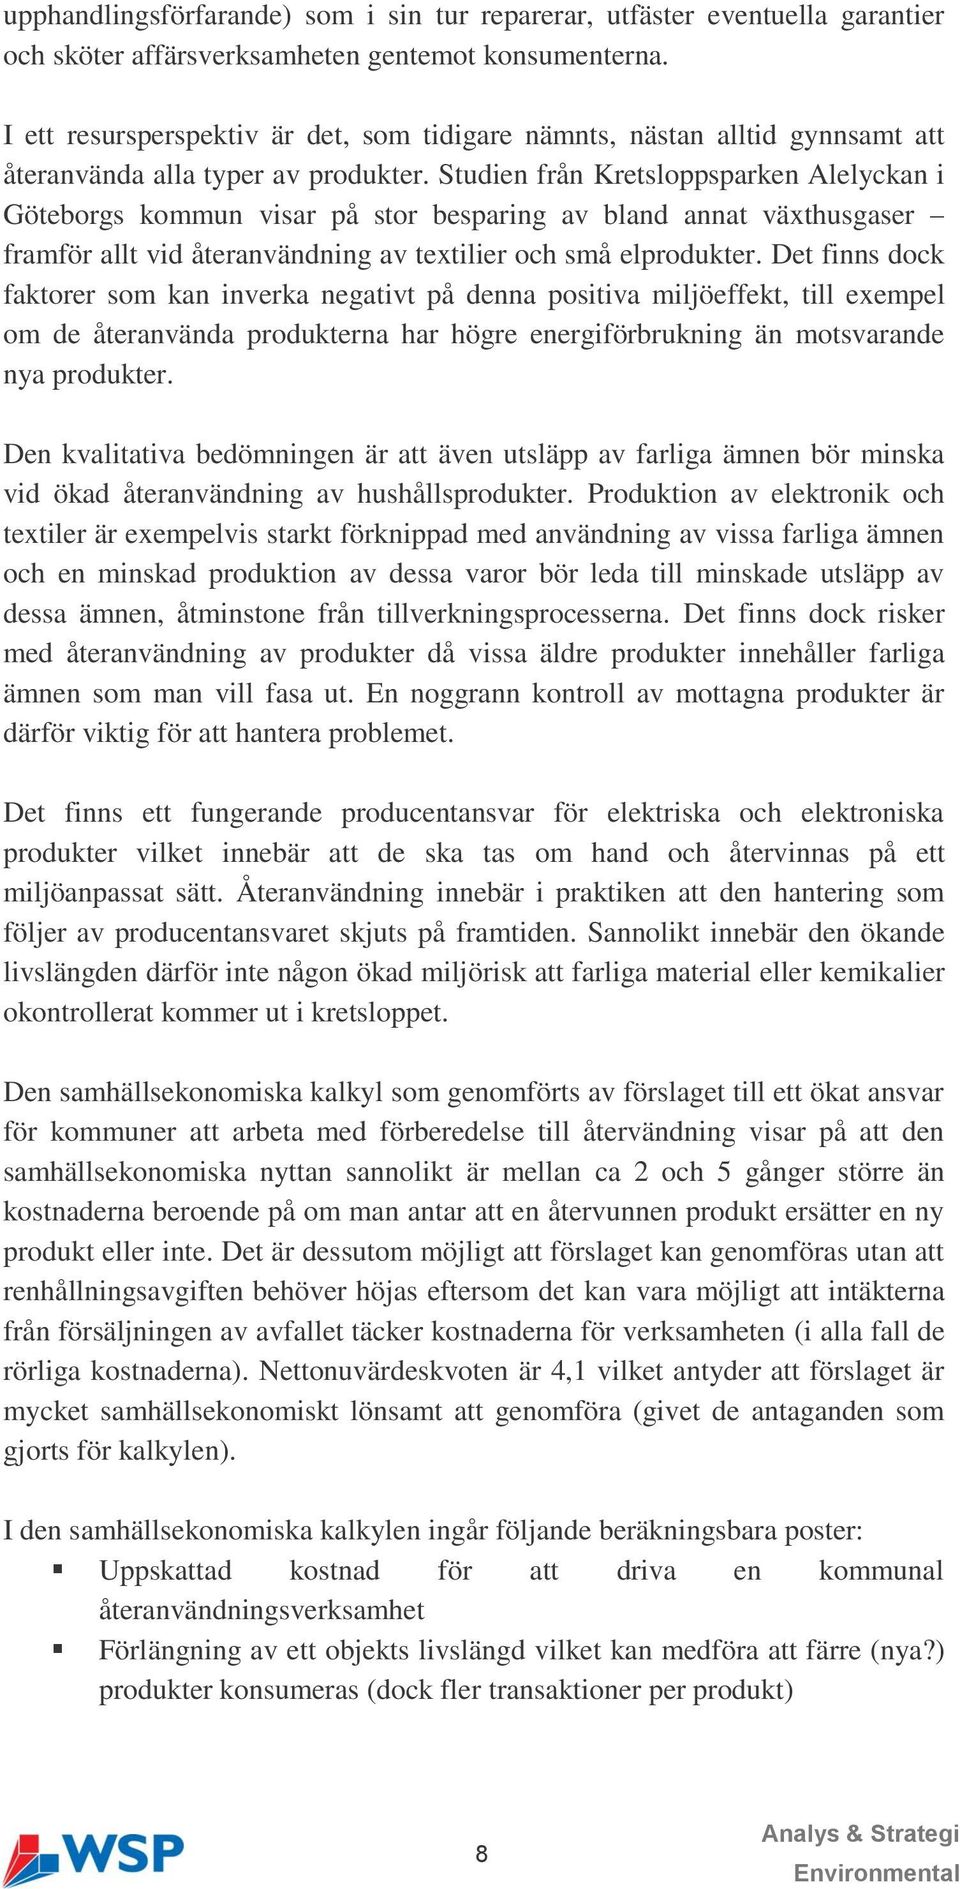 Studien från Kretsloppsparken Alelyckan i Göteborgs kommun visar på stor besparing av bland annat växthusgaser framför allt vid återanvändning av textilier och små elprodukter.